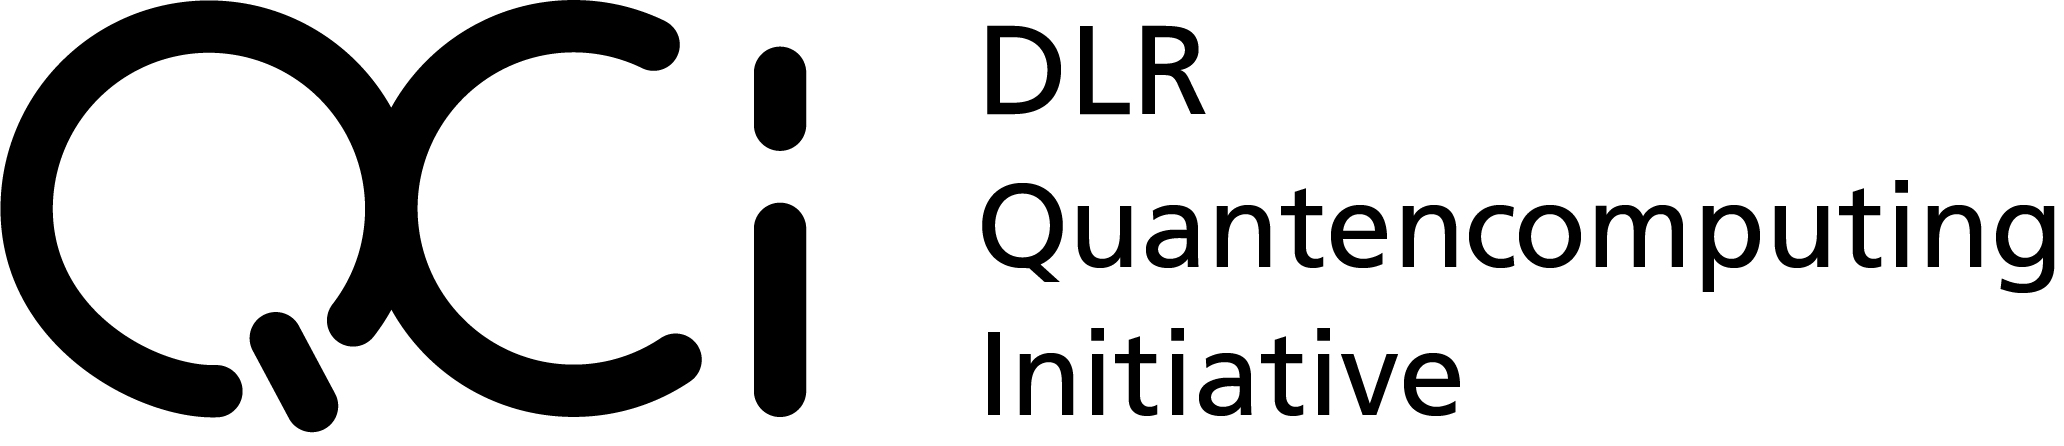 DLR Quantencomputing Initiative